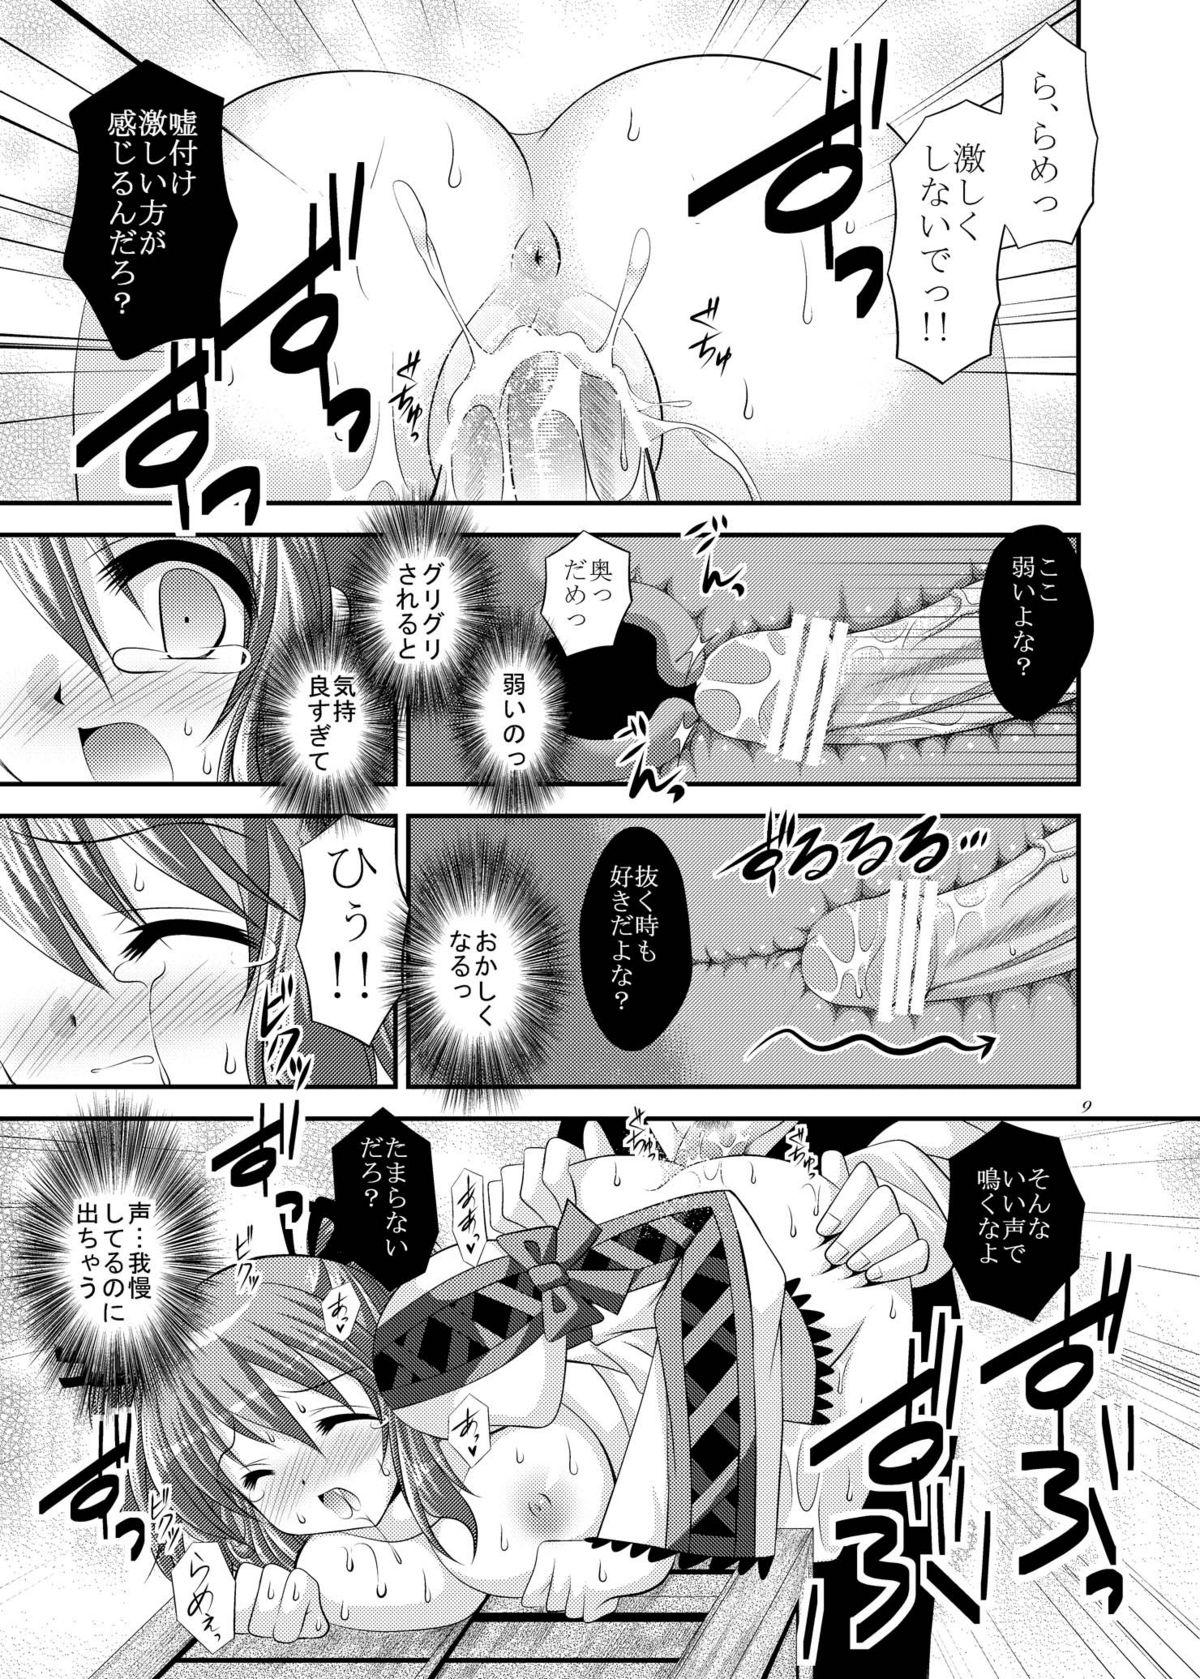 Punk Kienu Sora - Tales of graces Putita - Page 9